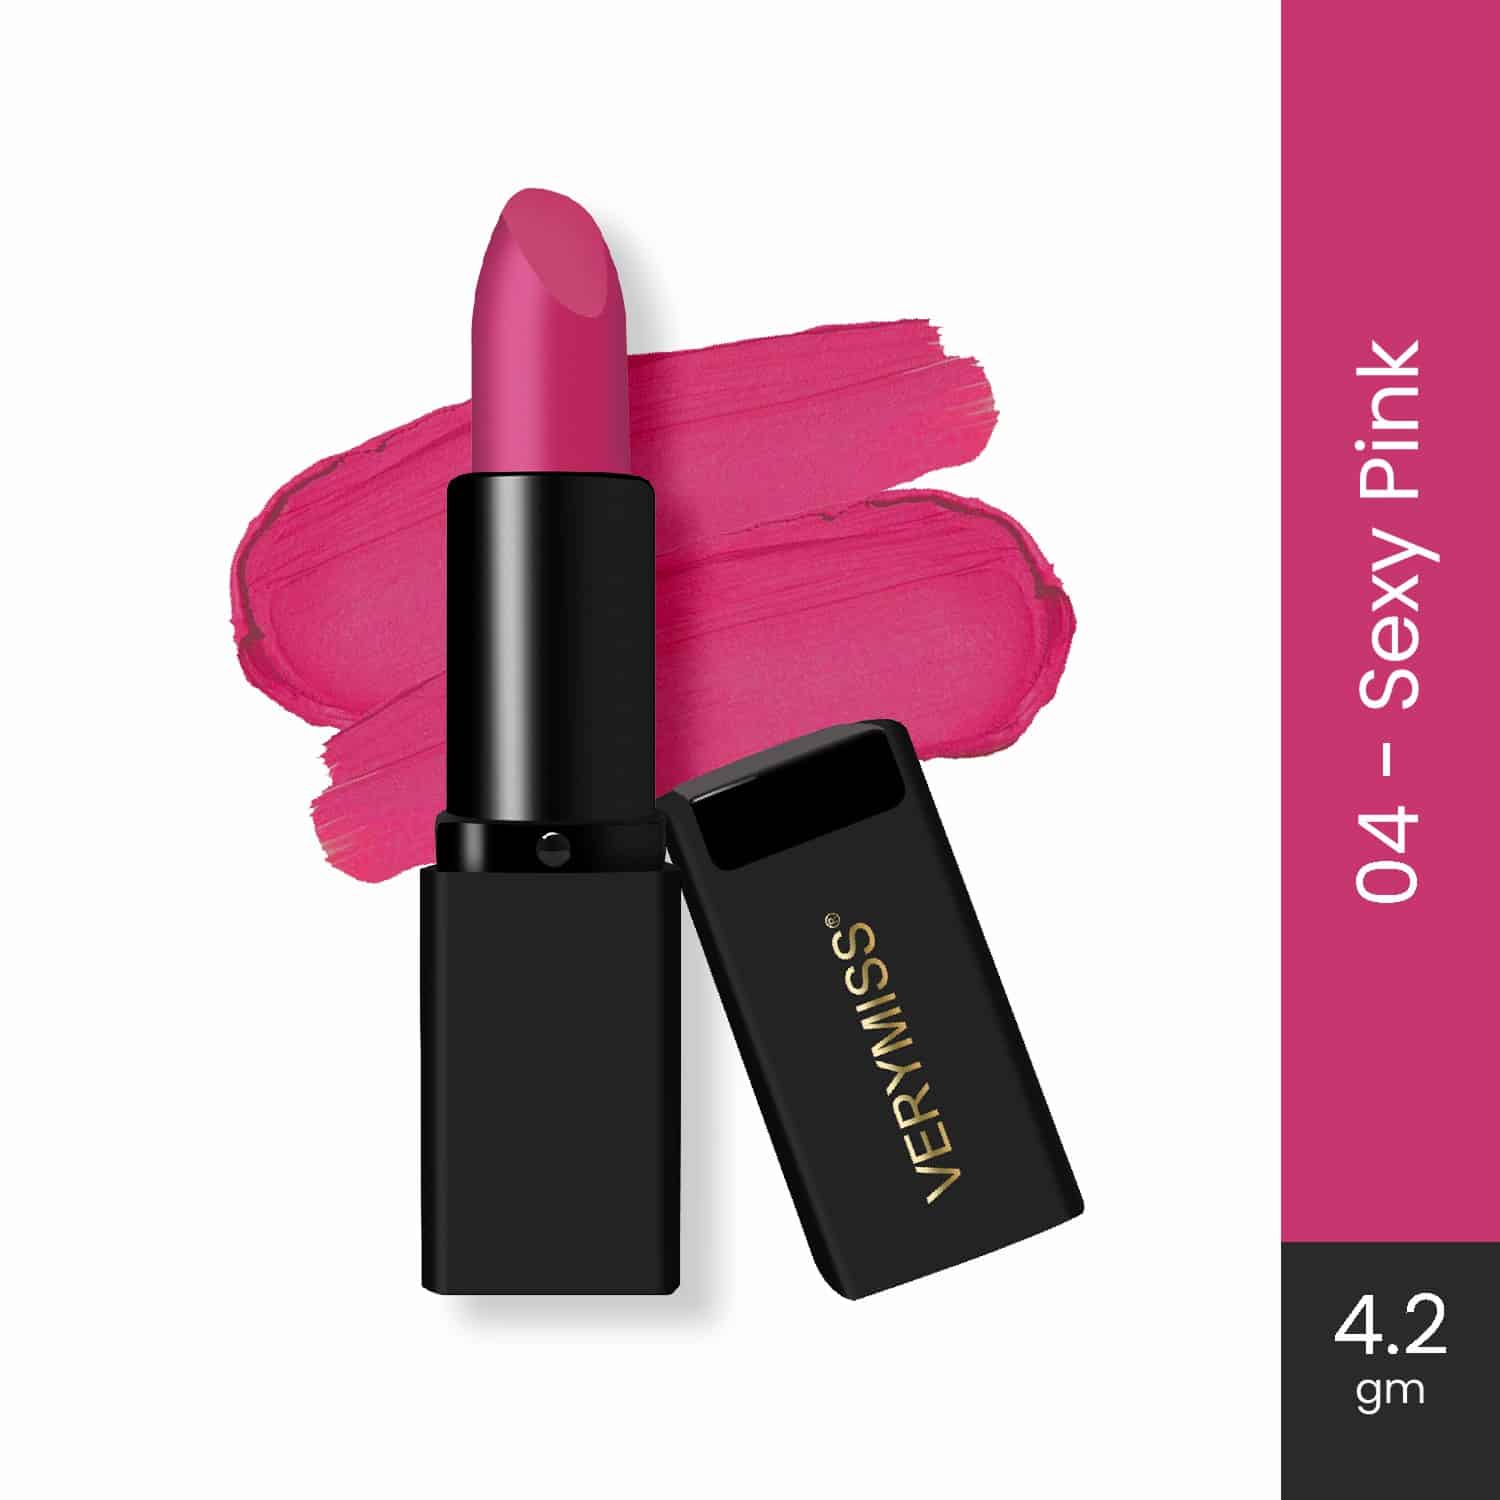 Wow Matte Lipstick - 04 Sexy Pink